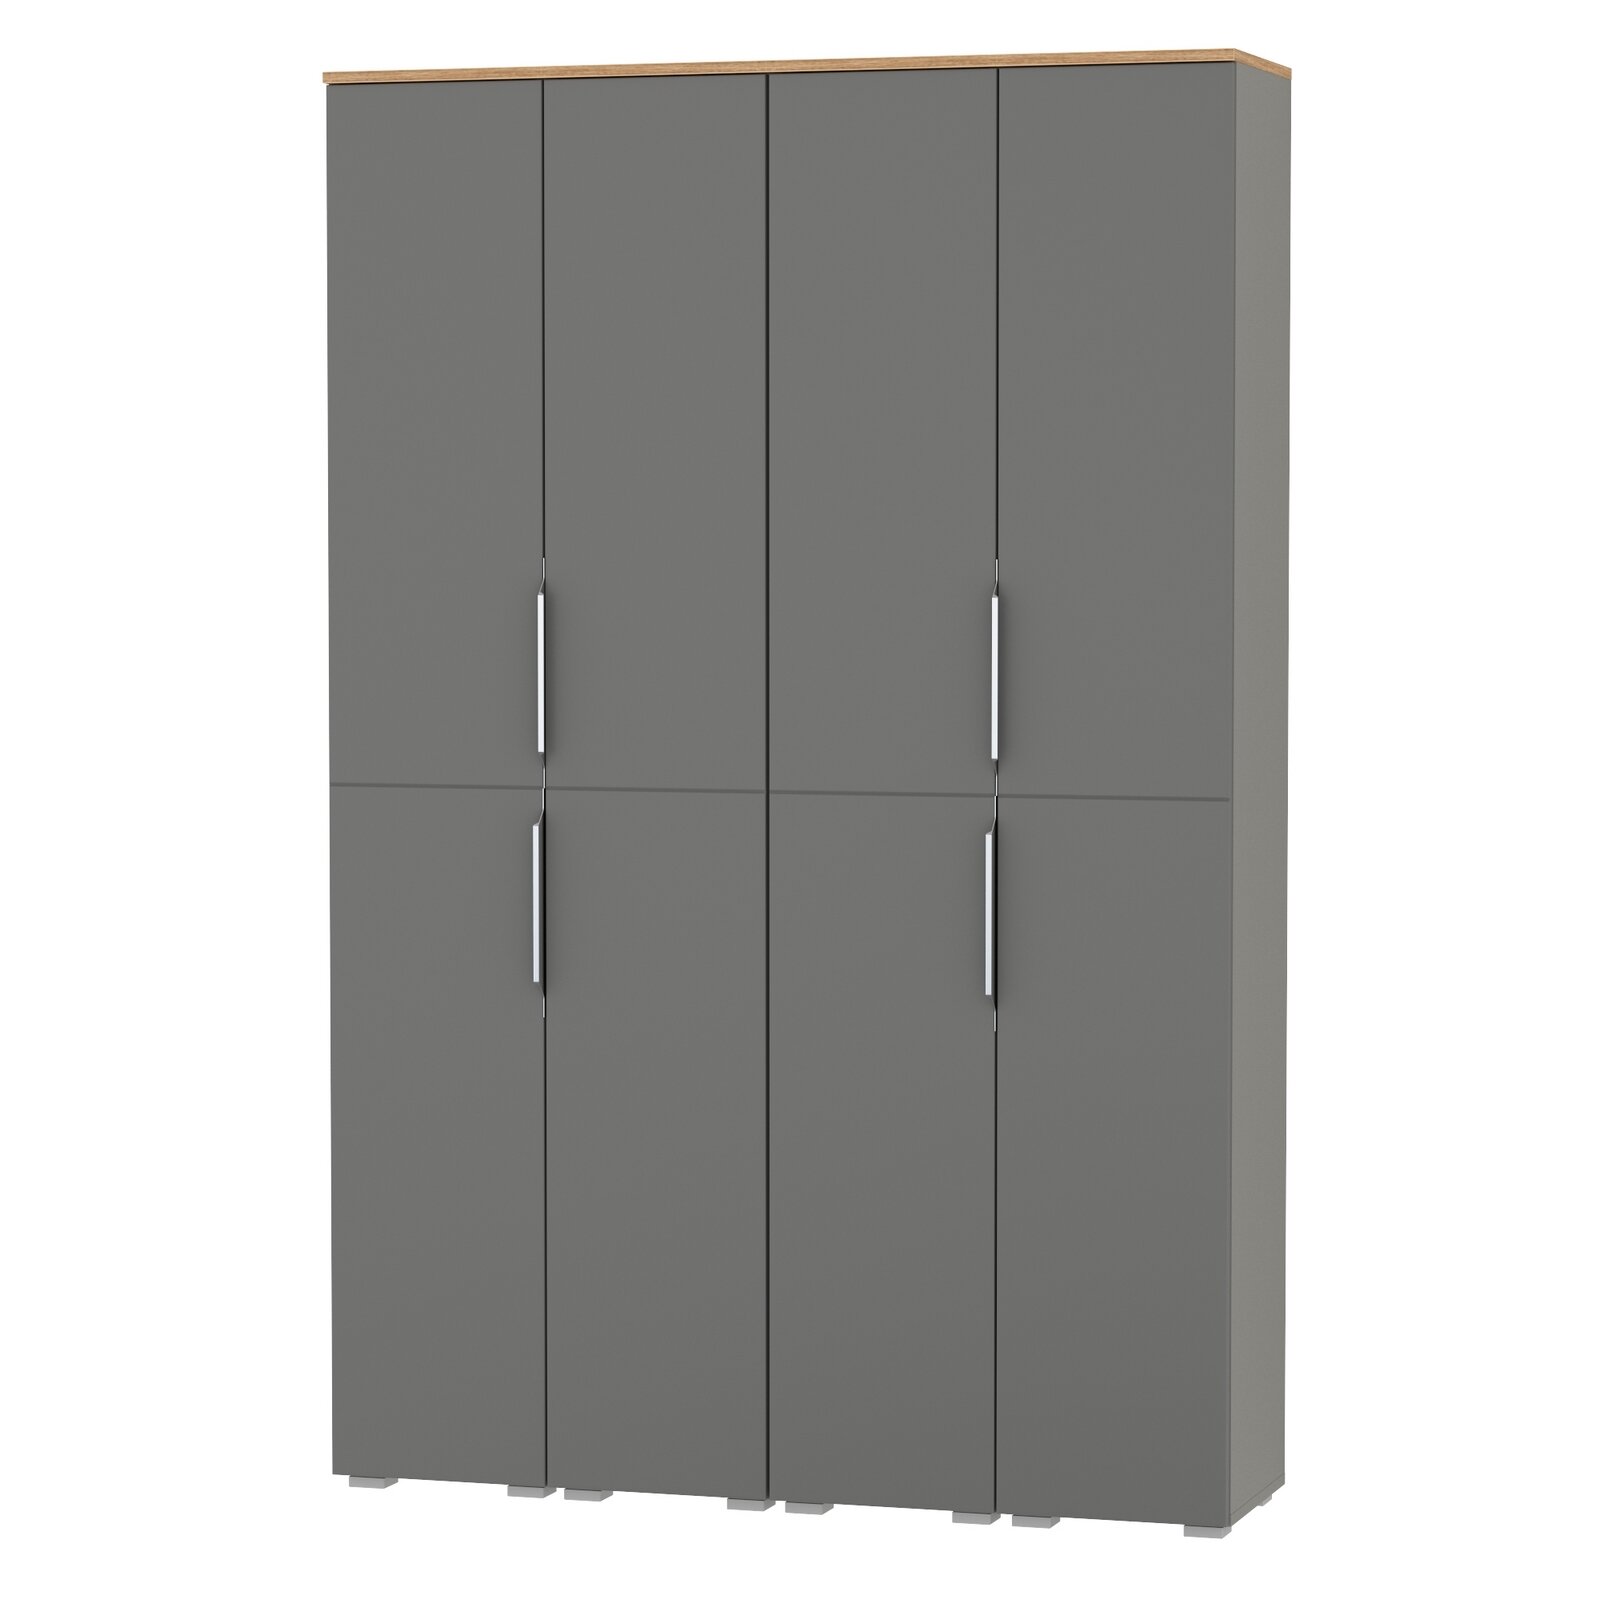 Стенка из шкафов для прихожей Моби Октава № 45 цвет серый графит/дуб крафт золотой, 128,8х35,3х197,6 см